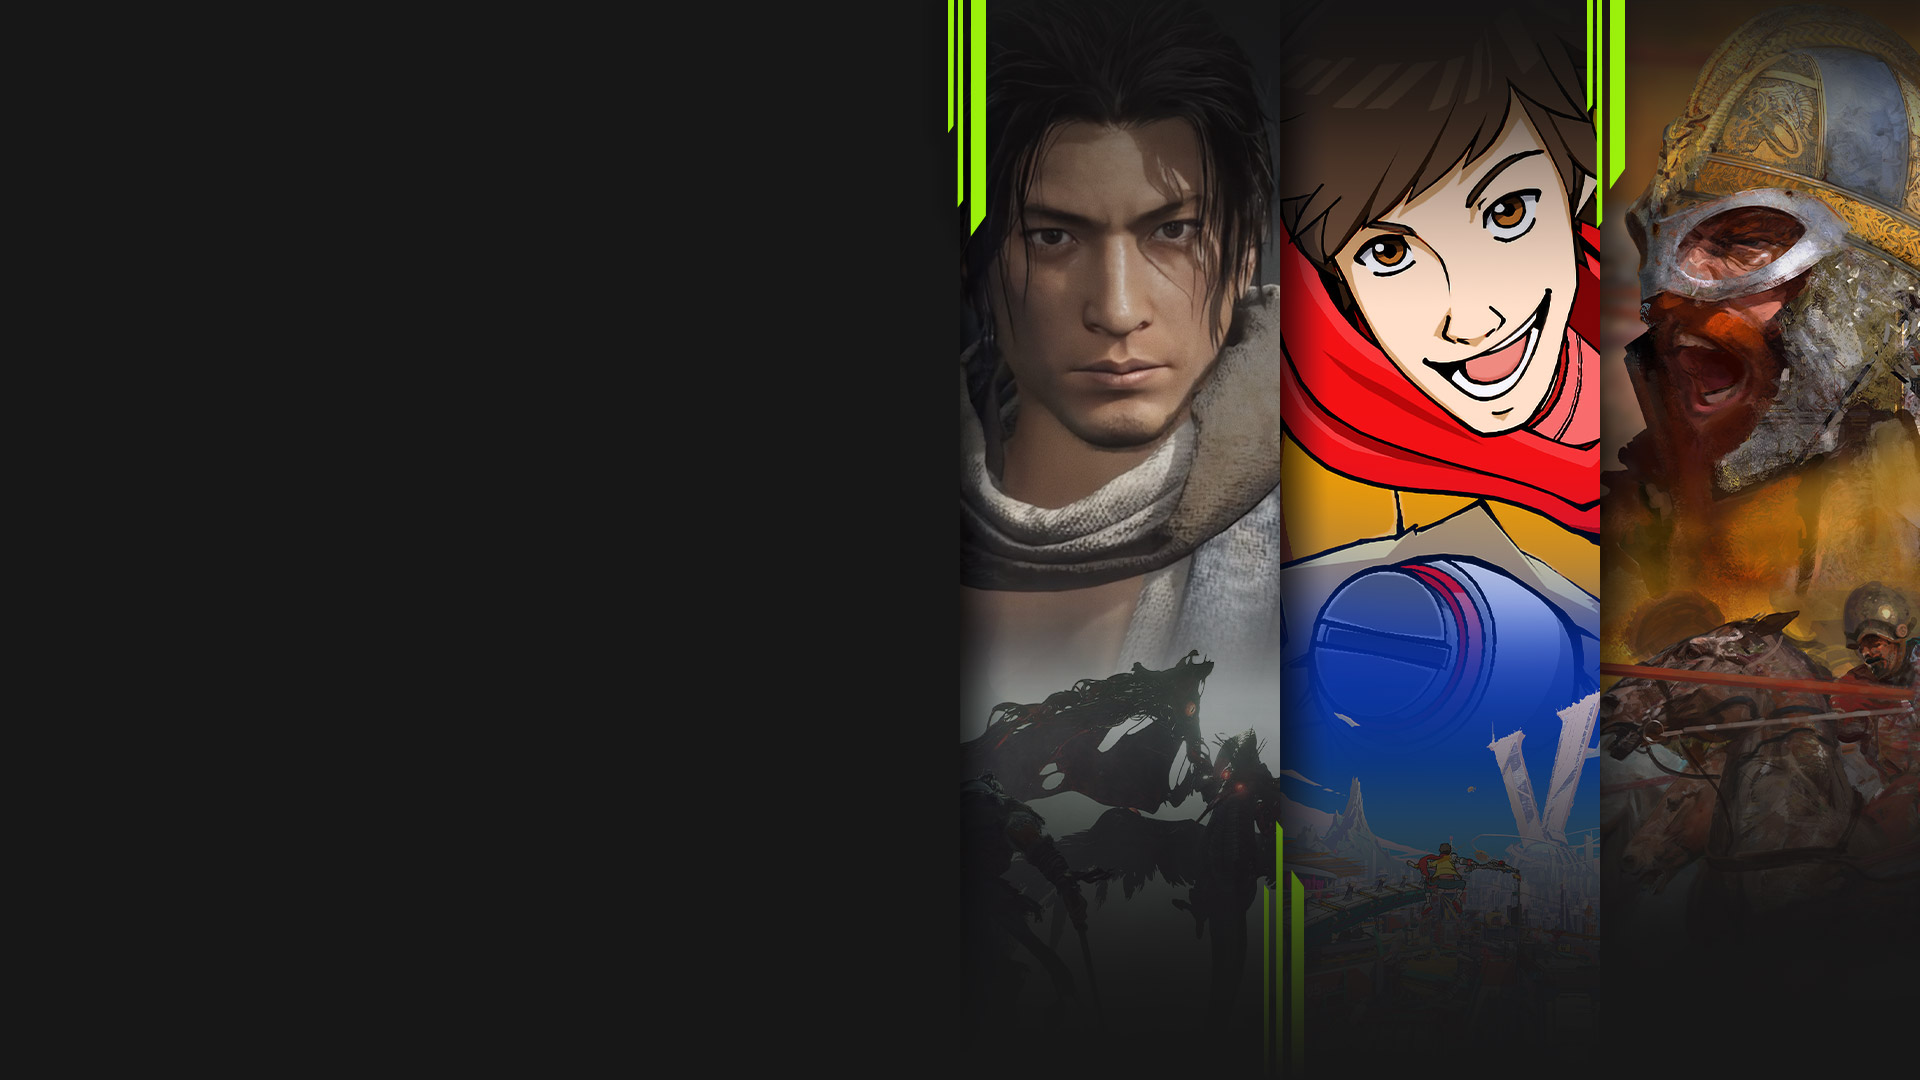 Pygmalion Loodgieter krom Abonnez-vous au Xbox Game Pass et découvrez votre prochain jeu préféré |  Xbox